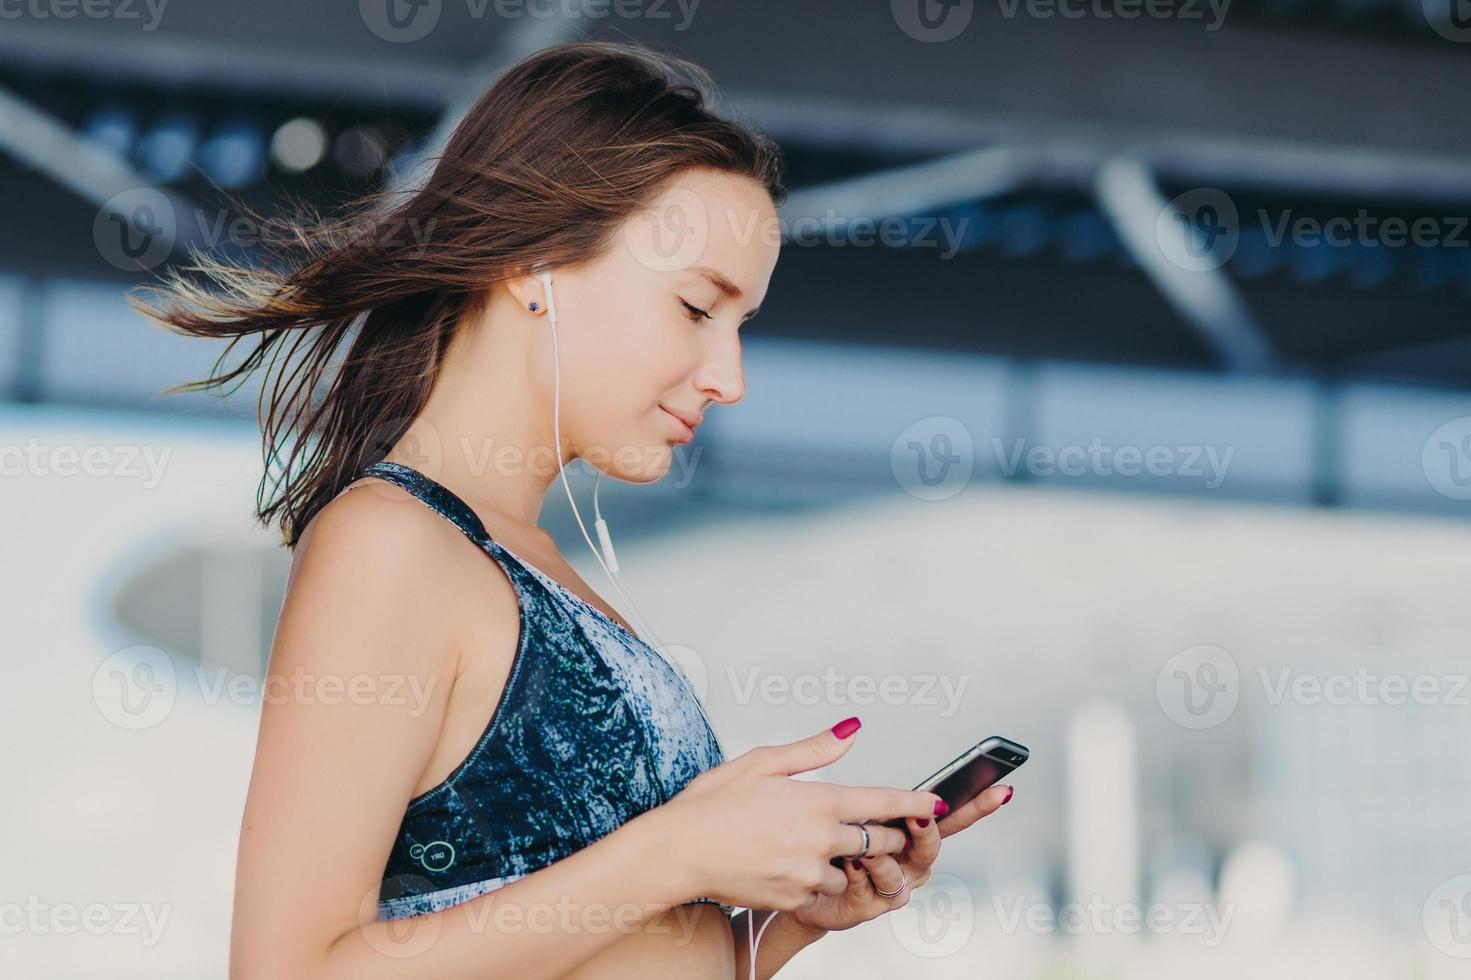 seitliche aufnahme einer sportlich schönen frau mit dunklem haar, in lässigem outfit gekleidet, hält ein modernes smartphone in der hand, überprüft die benachrichtigung, hört musik mit kopfhörern, genießt eine hochgeschwindigkeits-internetverbindung foto